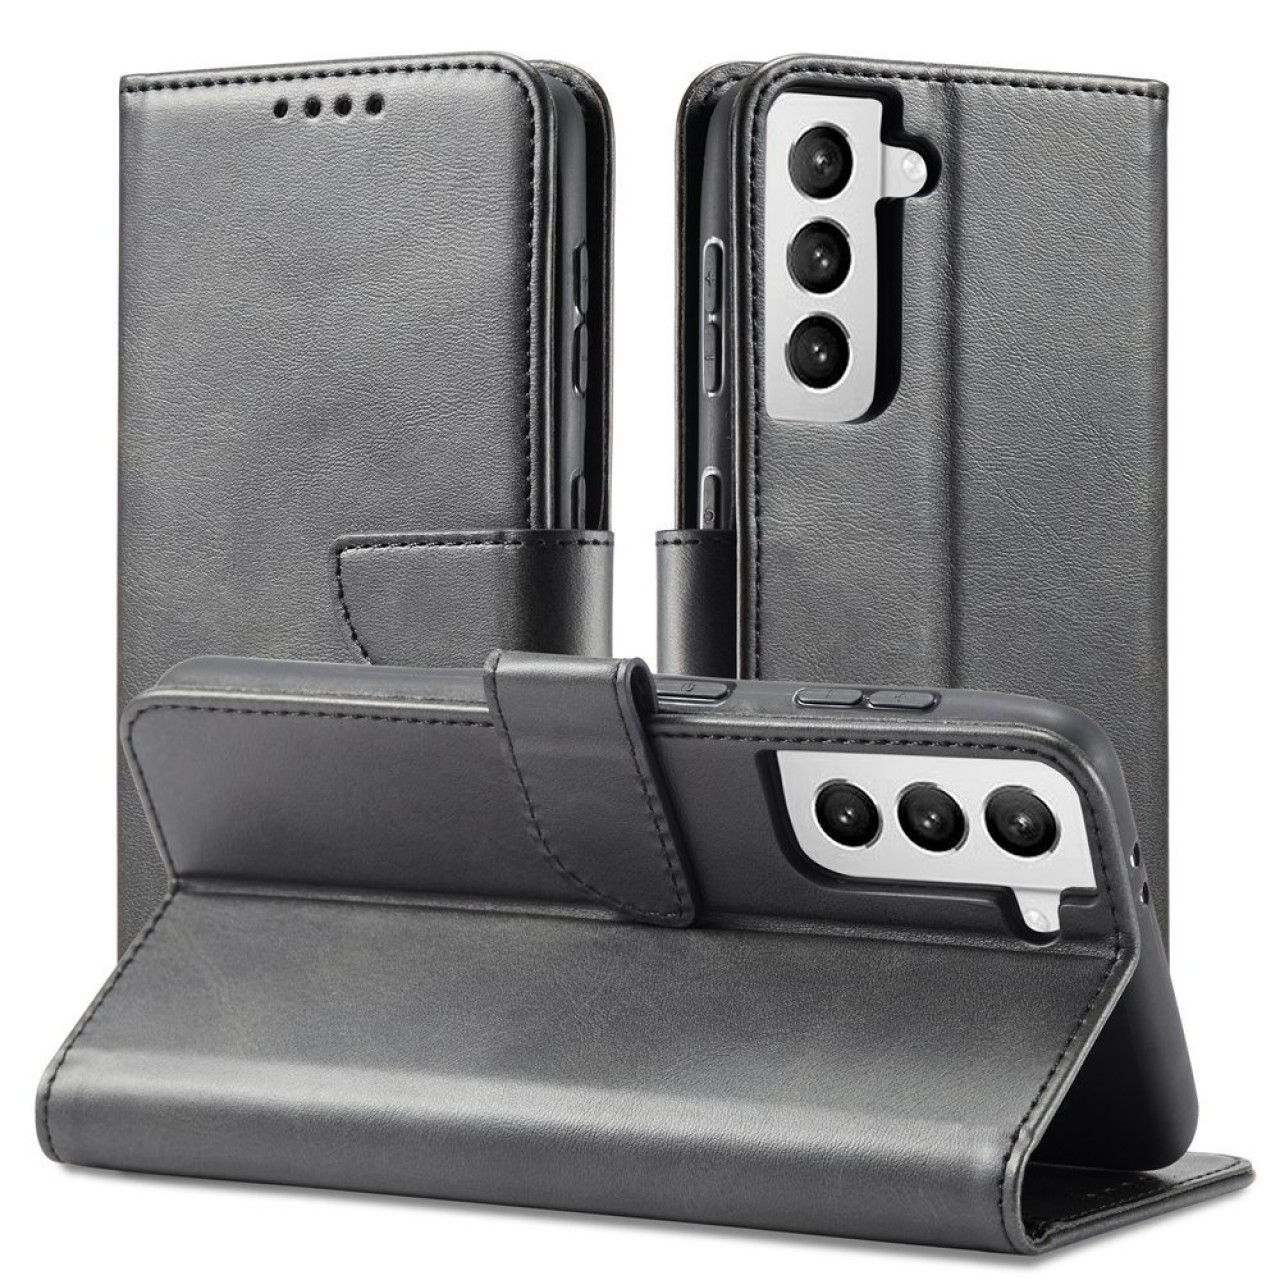 Θήκη Samsung Galaxy S21 Magnet Case elegant bookcase type case with kickstand - 5938 - Μαύρο - ΟΕΜ